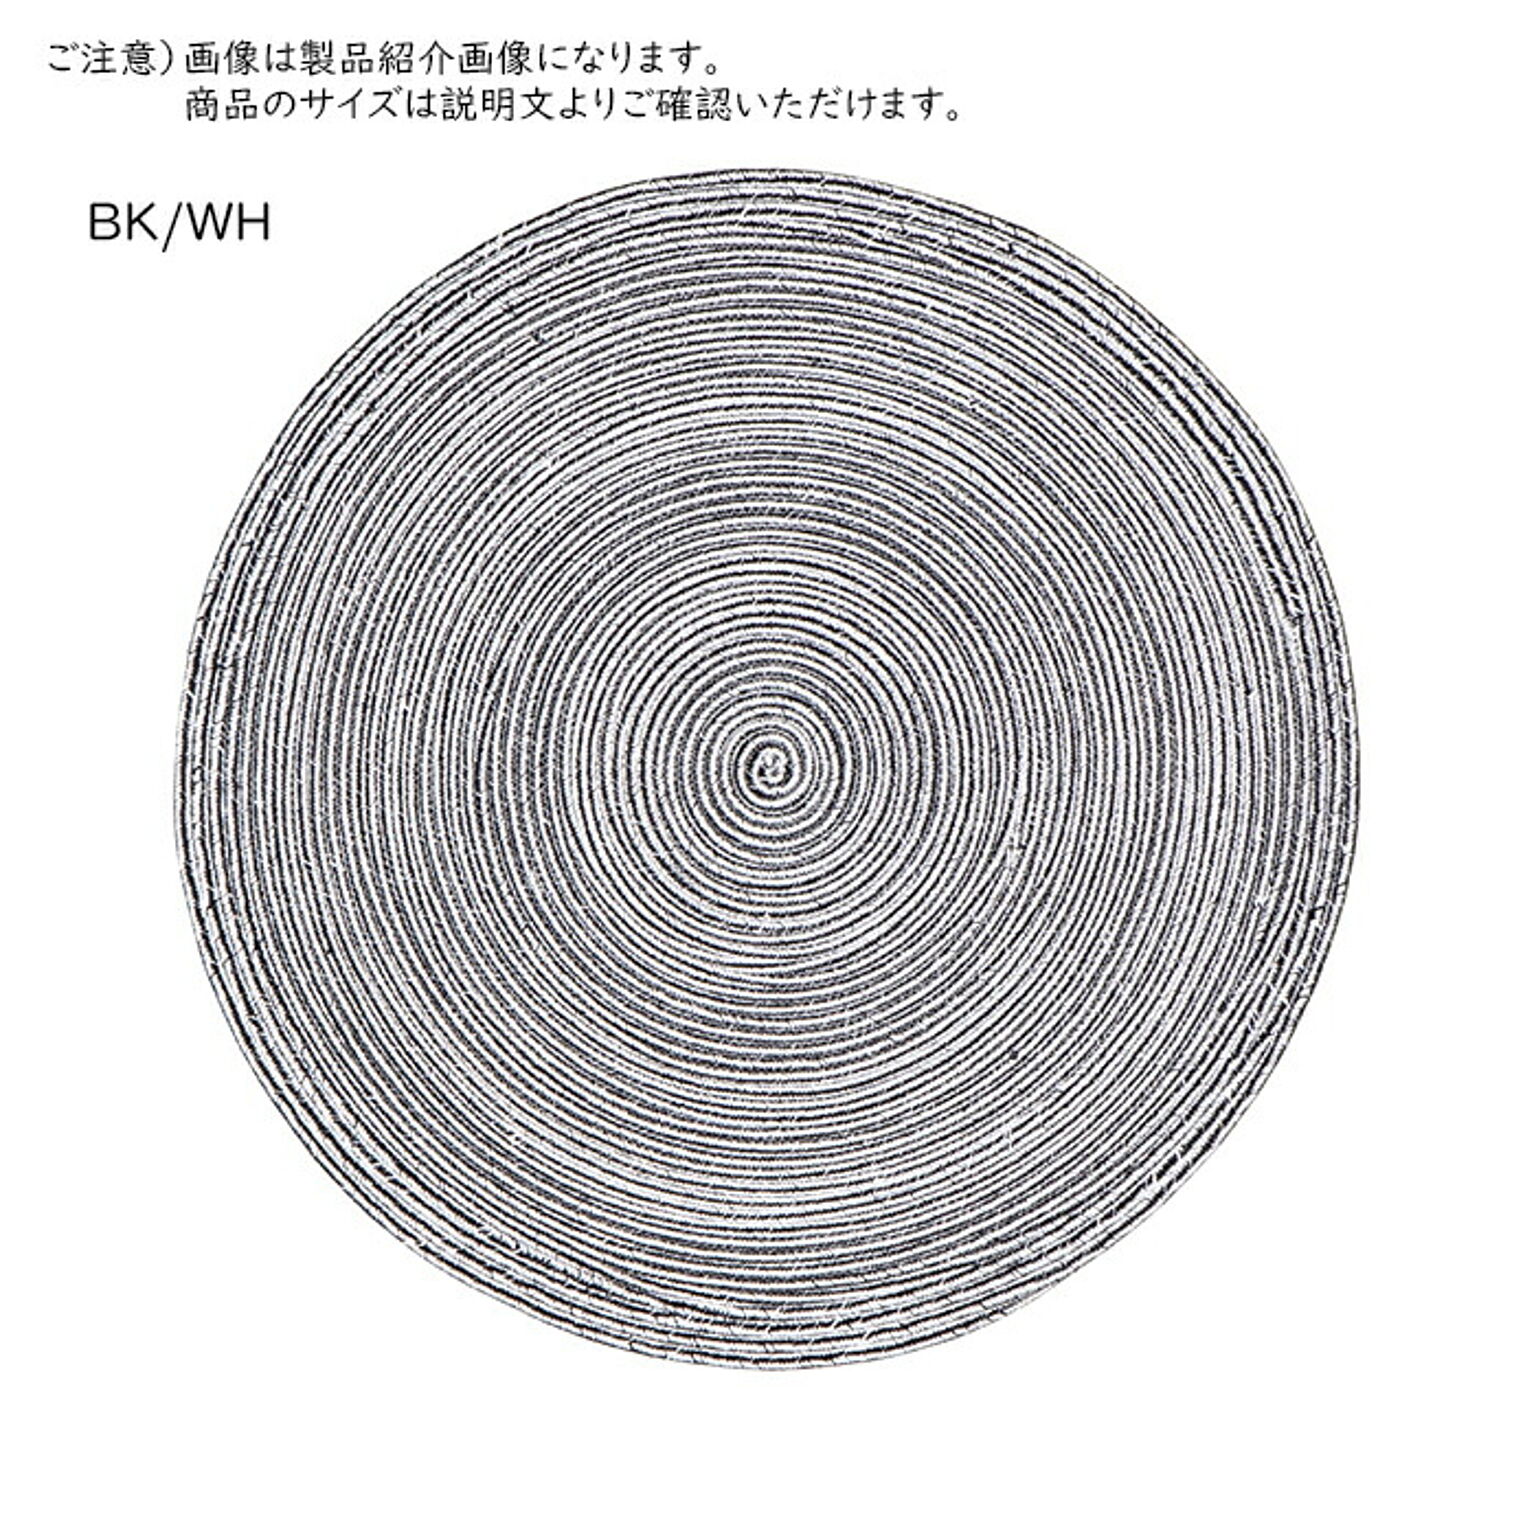 ラグ インド綿 ブレイド 円形 直径約180cm 萩原